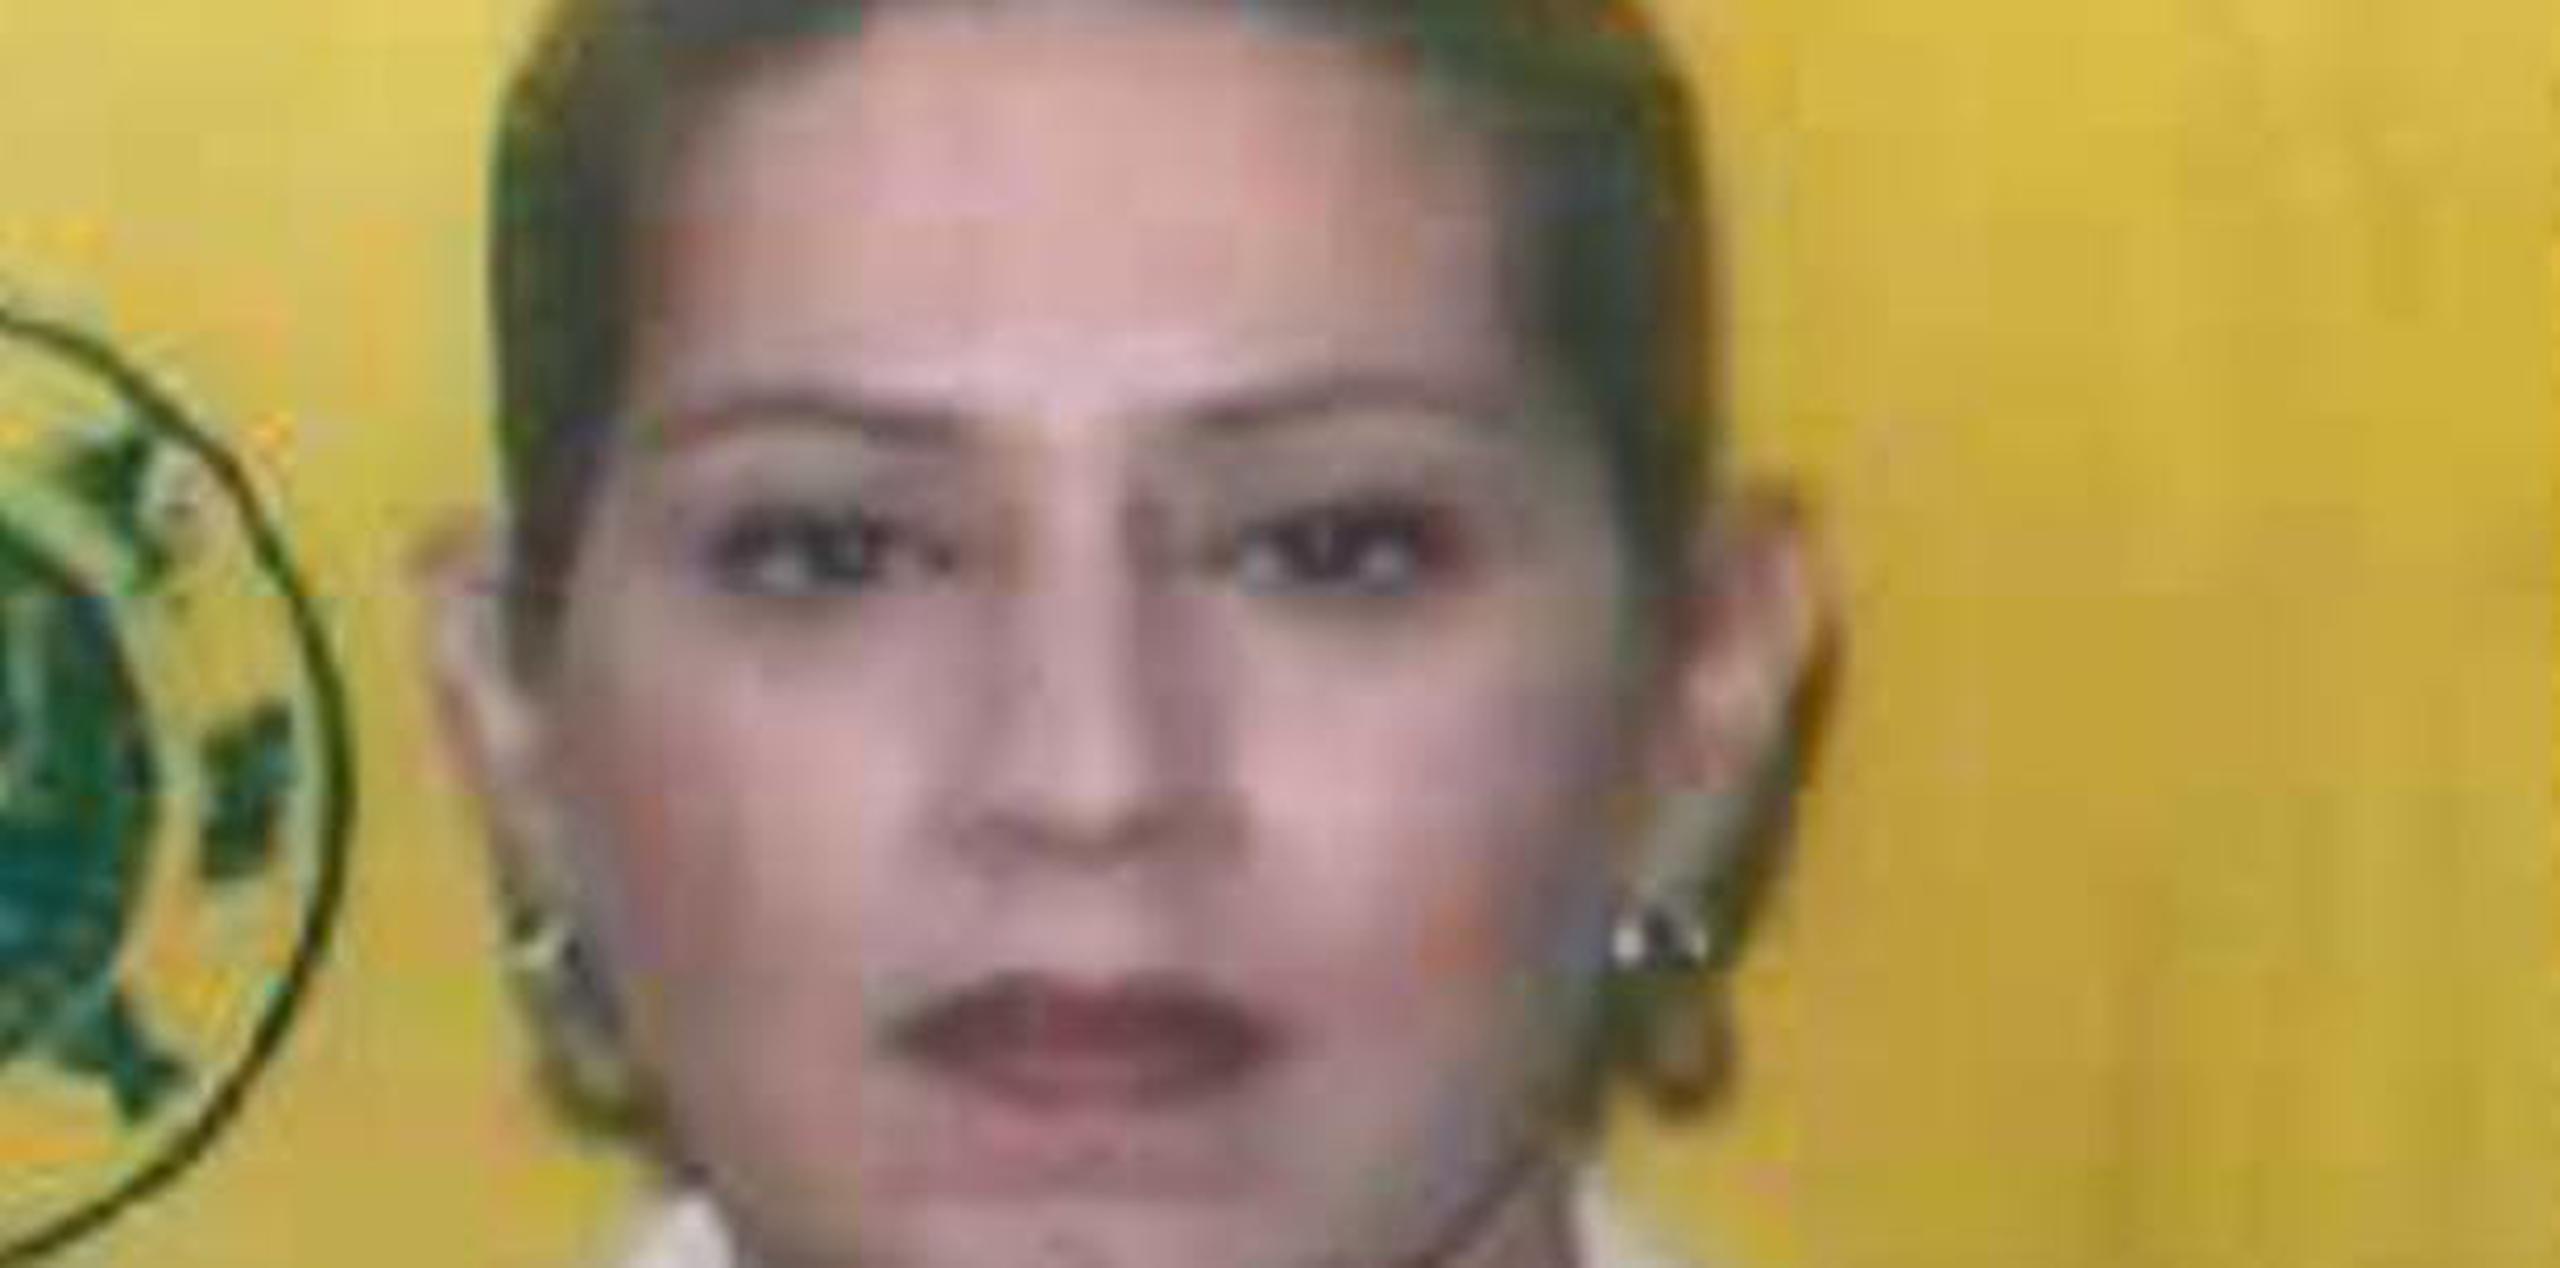 La oficial fue identificada como Mabel Padilla Báez. (Suministrada por la Policía)